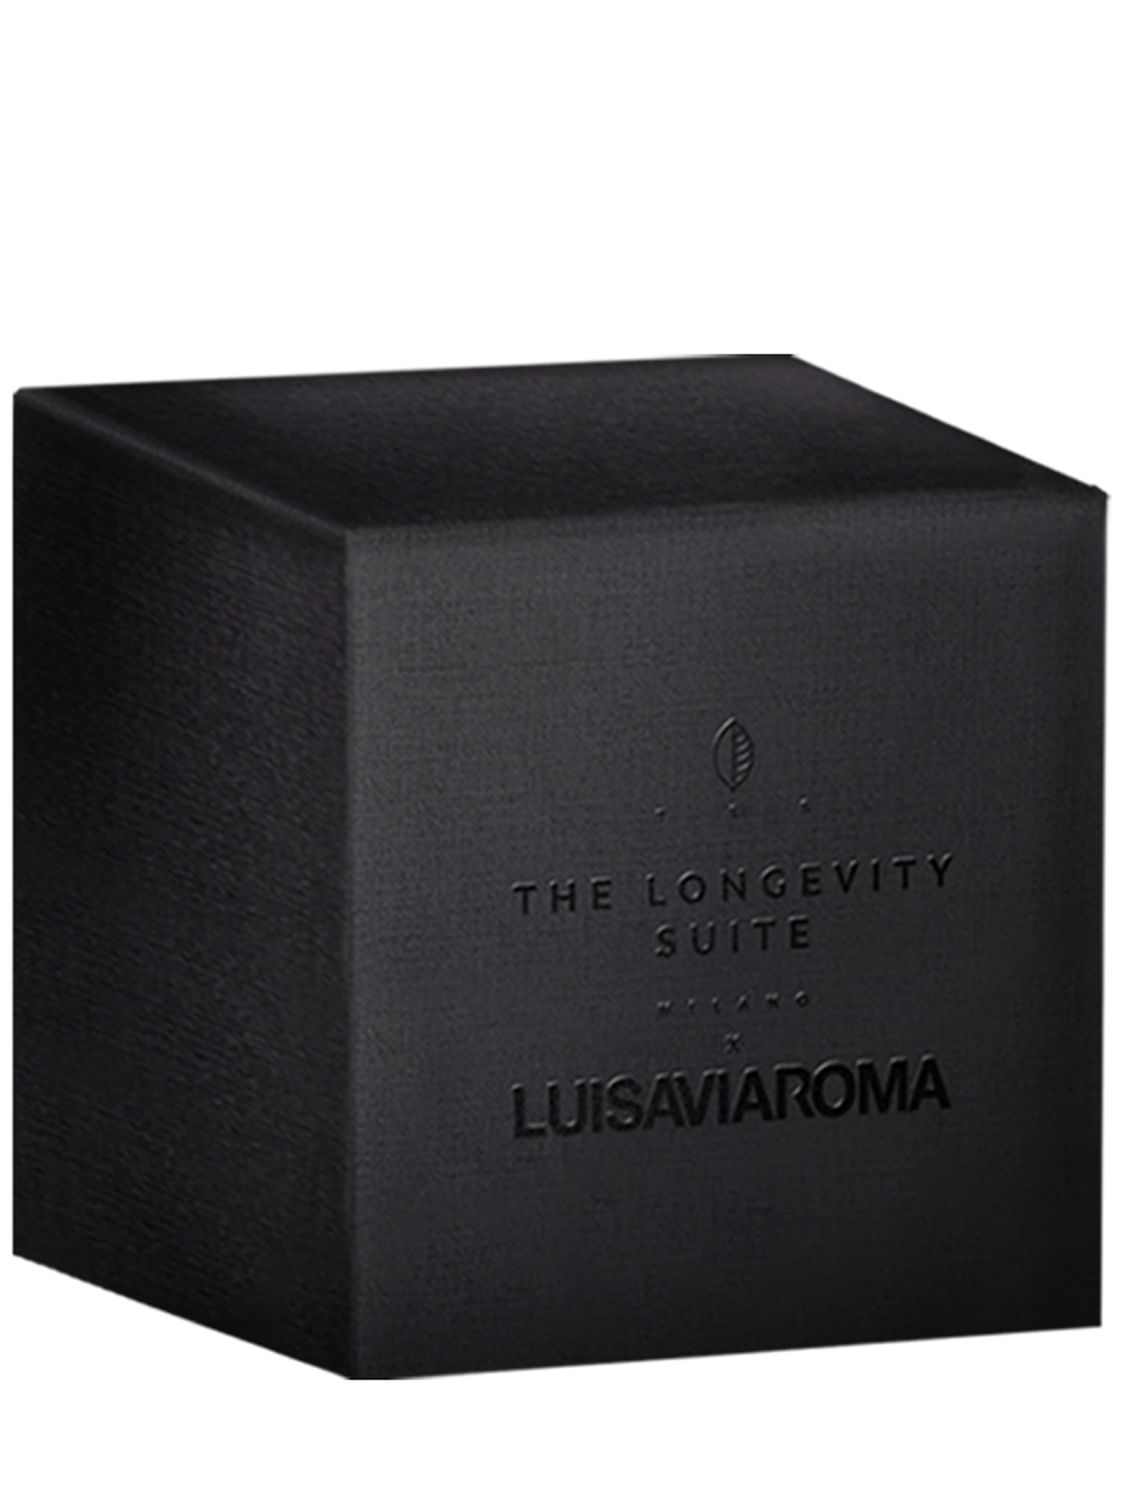  The Longevity Suite Lvr Limited Edition Box Set 